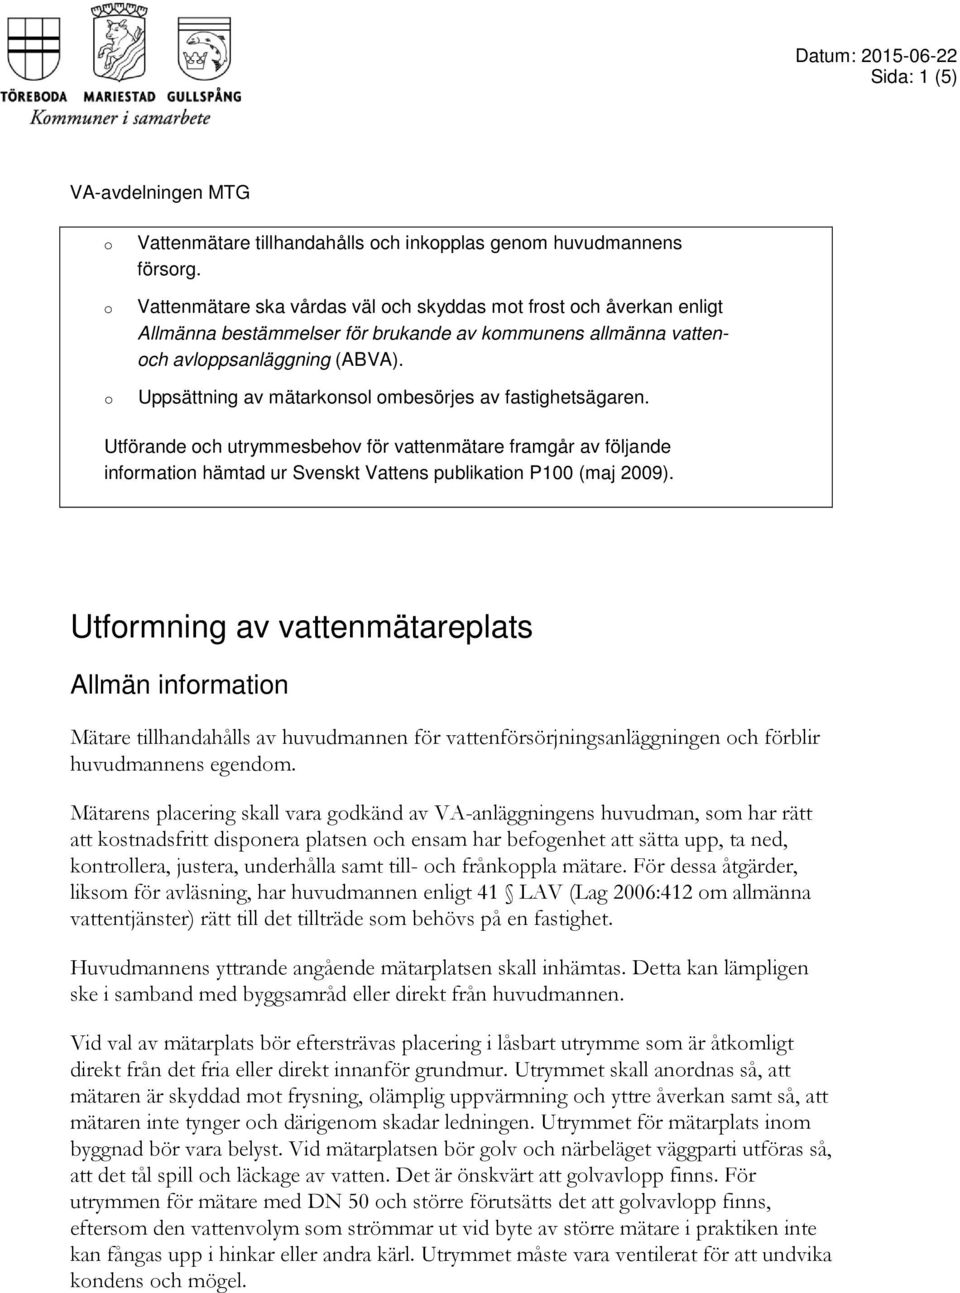 Uppsättning av mätarknsl mbesörjes av fastighetsägaren. Utförande ch utrymmesbehv för vattenmätare framgår av följande infrmatin hämtad ur Svenskt Vattens publikatin P100 (maj 2009).